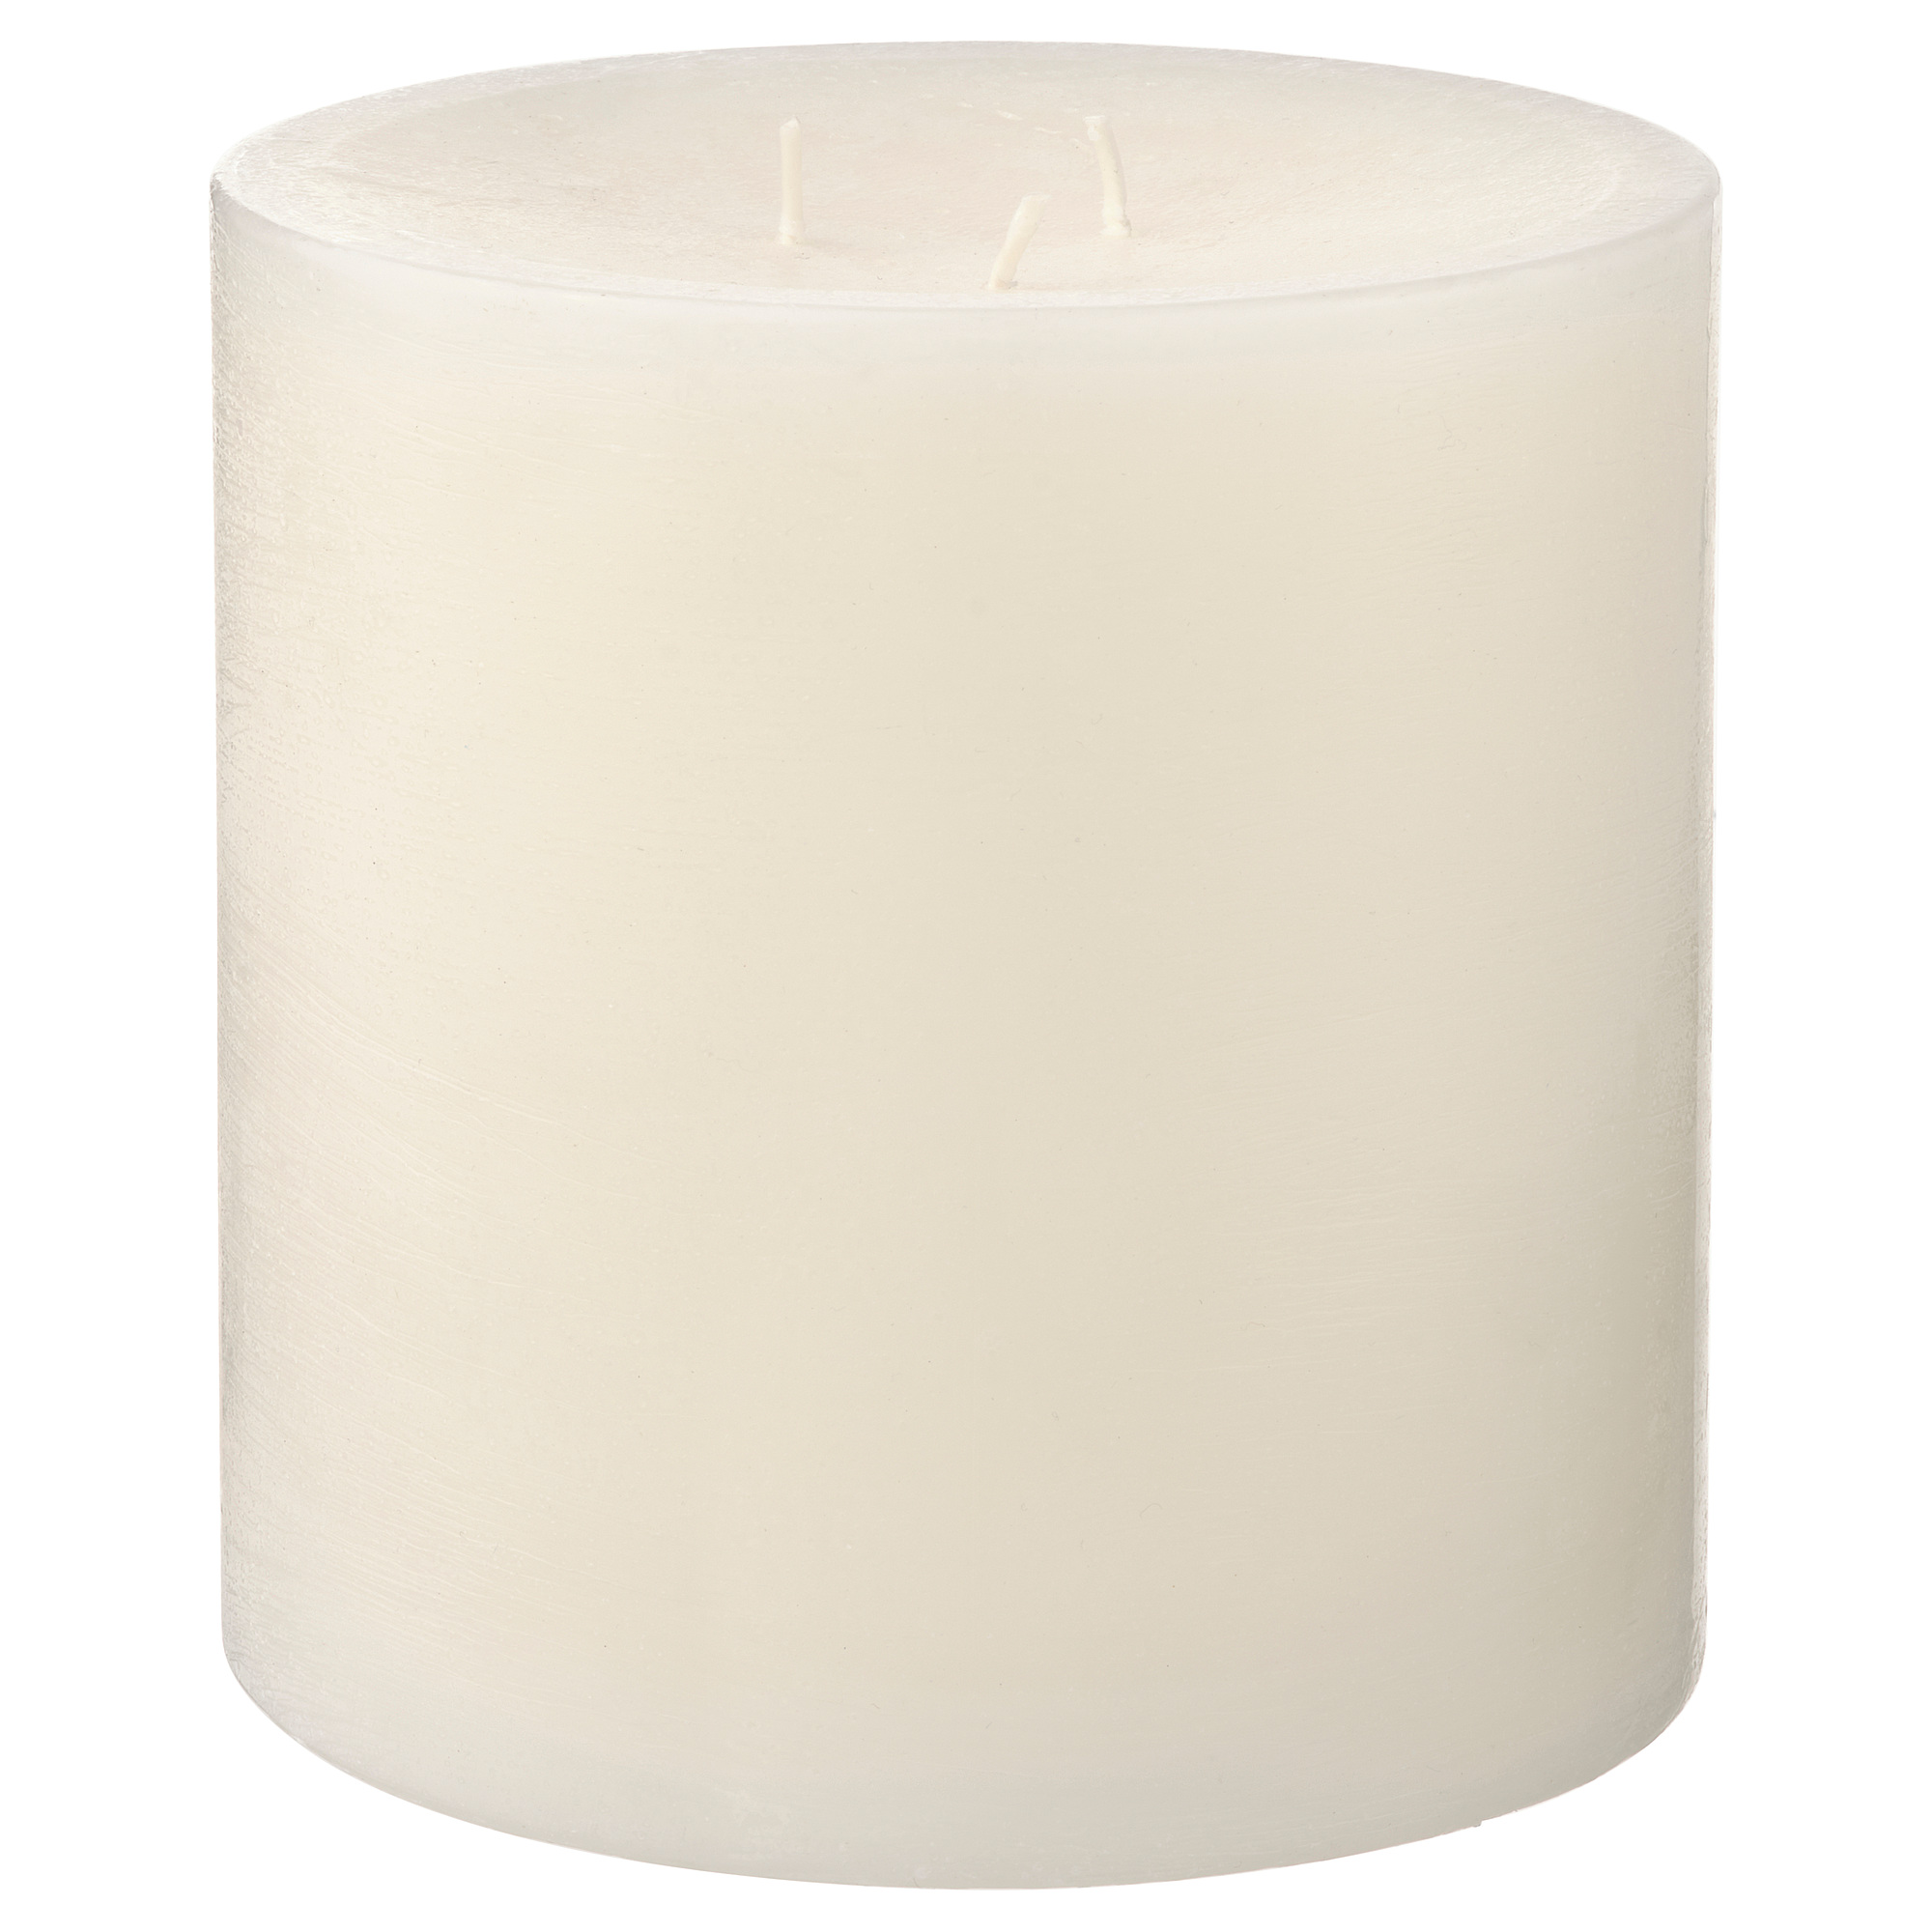 GRÄNSSKOG unscented block candle, 3 wicks